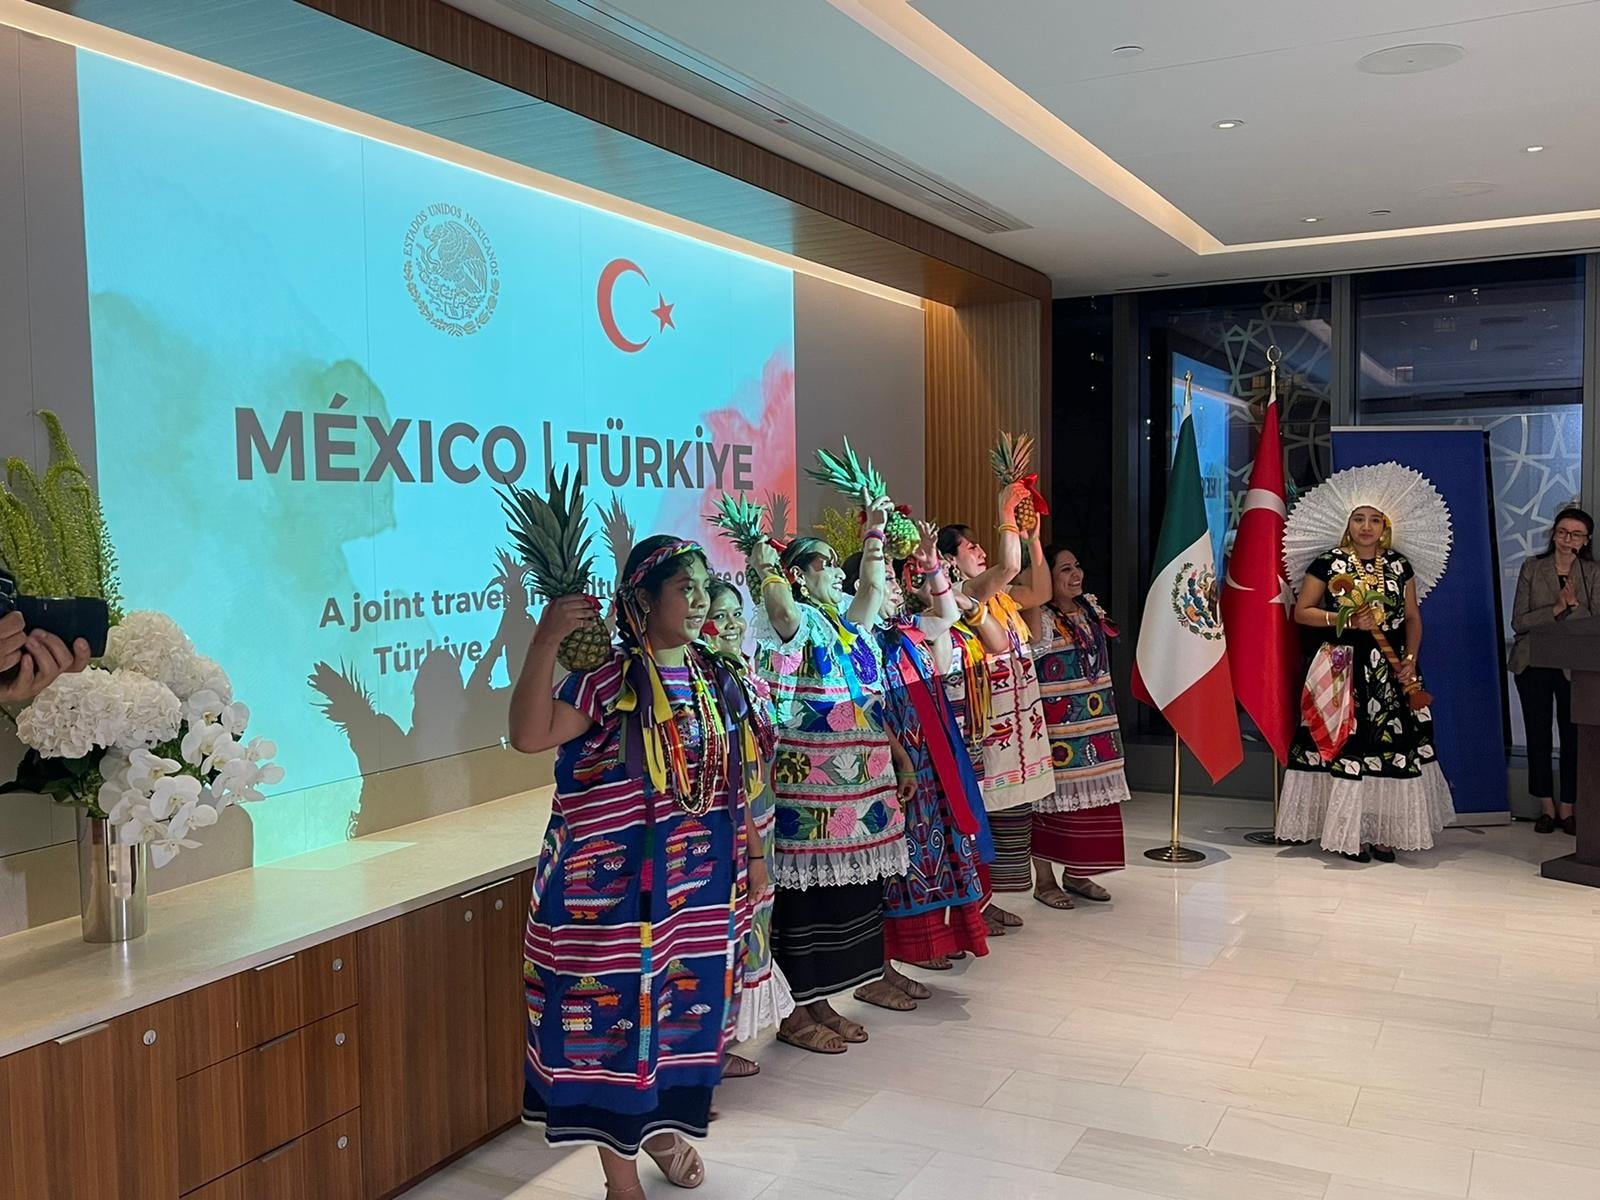 Türkiye'nin New York Başkonsolosluğu'nun Tarkivi'de düzenlediği etkinlik, kültürel etkileşimi teşvik etmek için Meksika toplumunu ağırlıyor, New York, Amerika Birleşik Devletleri, 28 Ağustos 2022. (AA Fotoğrafı)